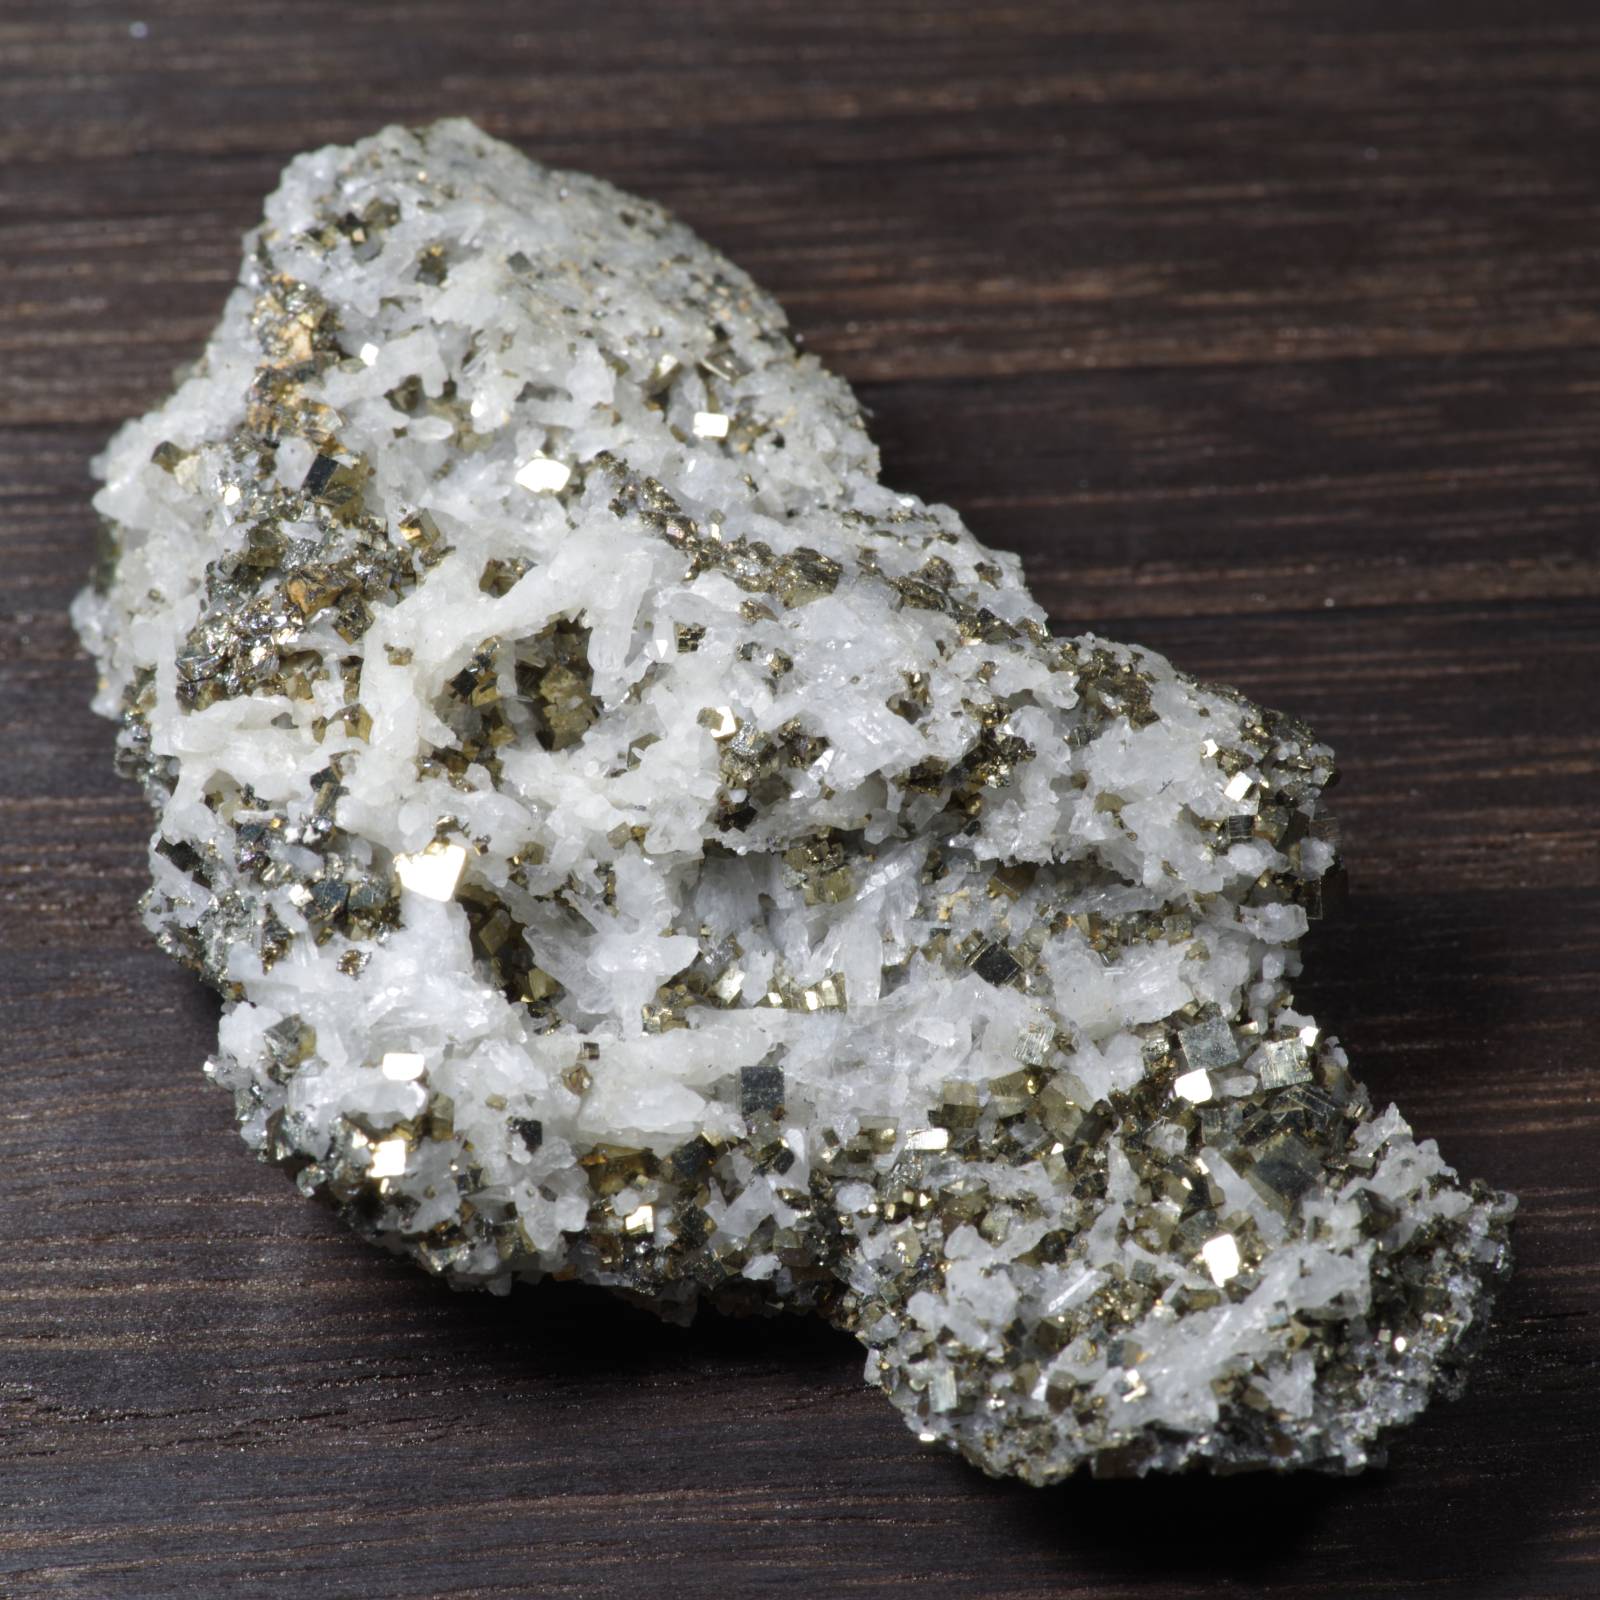 パイライト 黄鉄鉱 中国産 Pyrite China 原石 写真現物 動画あり